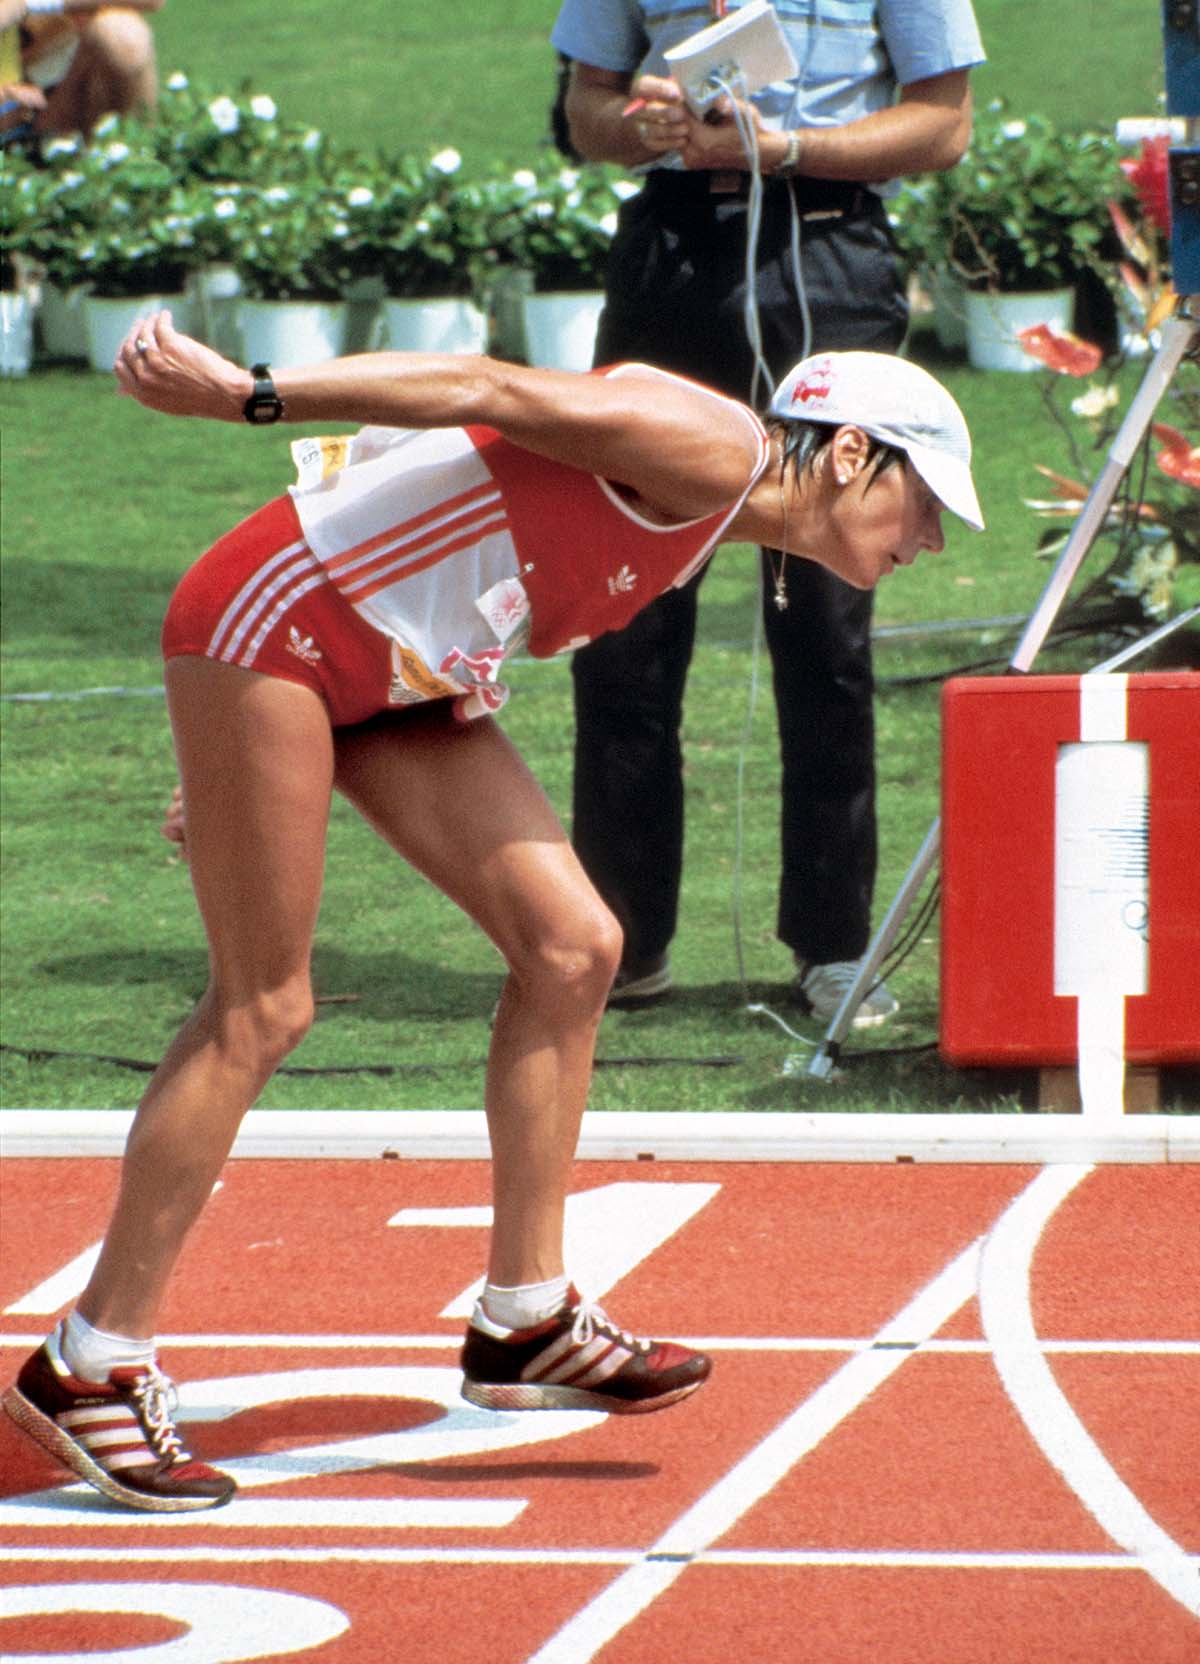 25415625- Keystone-ATS/EPU/Str - En 1984, lors du premier marathon olympique féminin, la Suissesses Gaby Andersen-Schiess franchit la ligne d'arrivée complètement déshydratée et épuisée. Il lui a fallu sept minutes pour parcourir les 500 derniers mètres, et elle a bien involontairement proposé des images qui engendrent encore aujourd’hui une immense émotion.